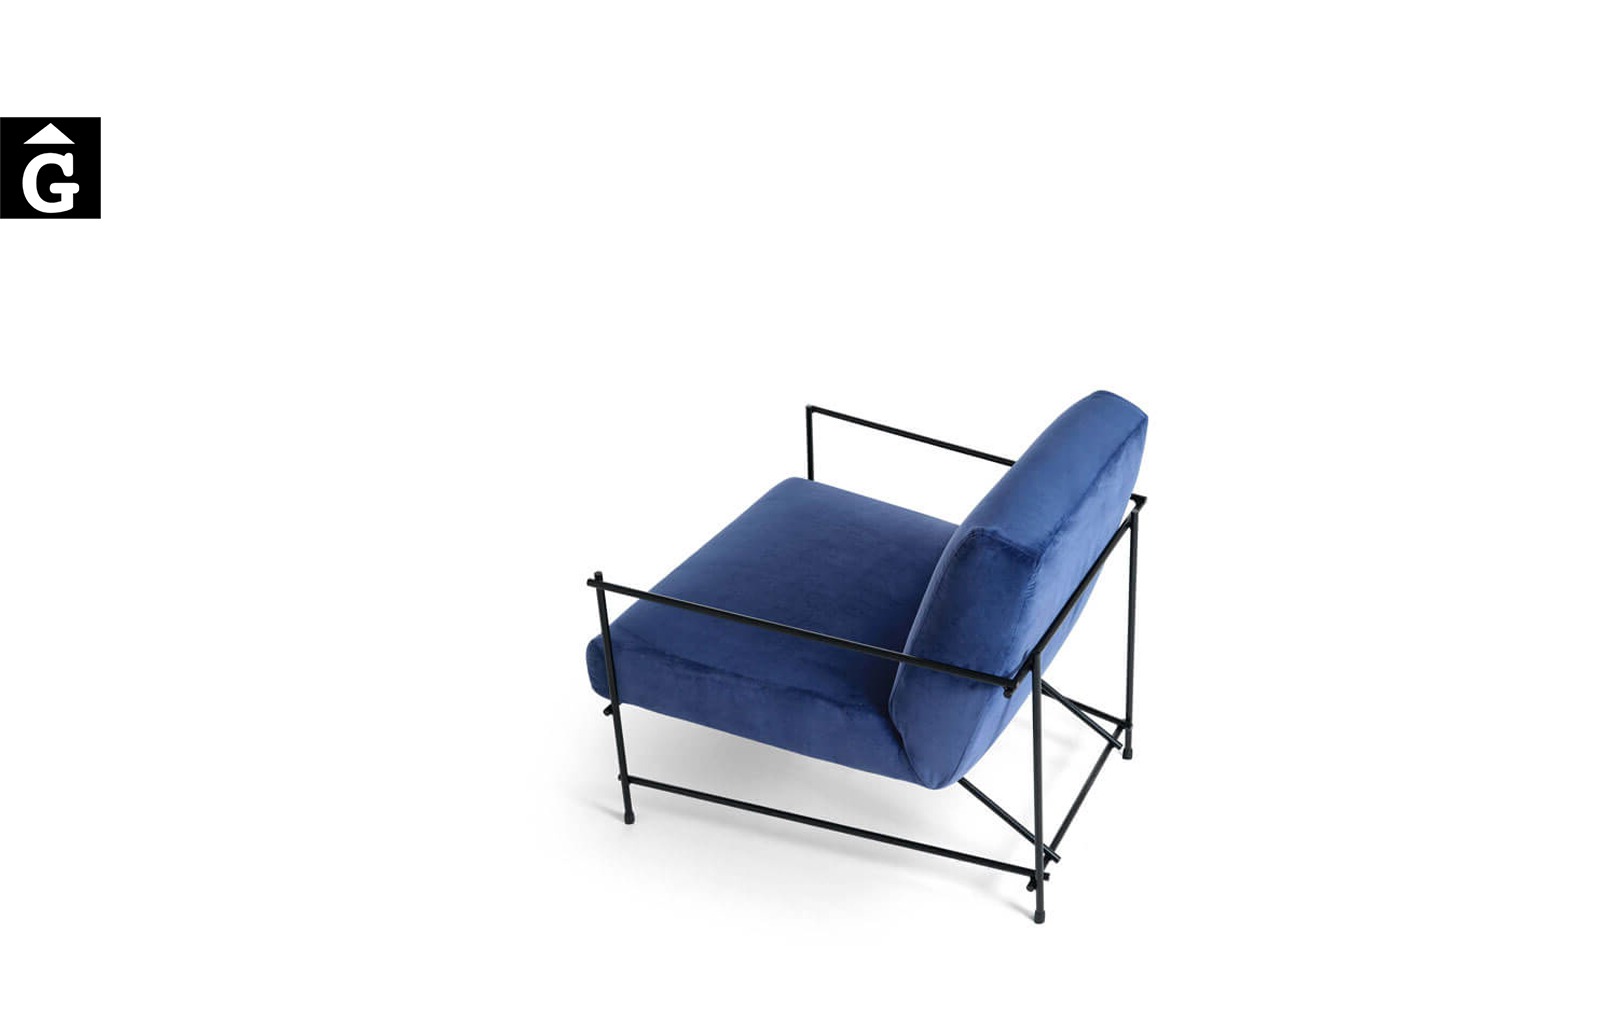 Butaca Kyo Ditre Italia entapissada blava vista del darrera – Ditre Italia Sofas disseny i qualitat alta by mobles Gifreu